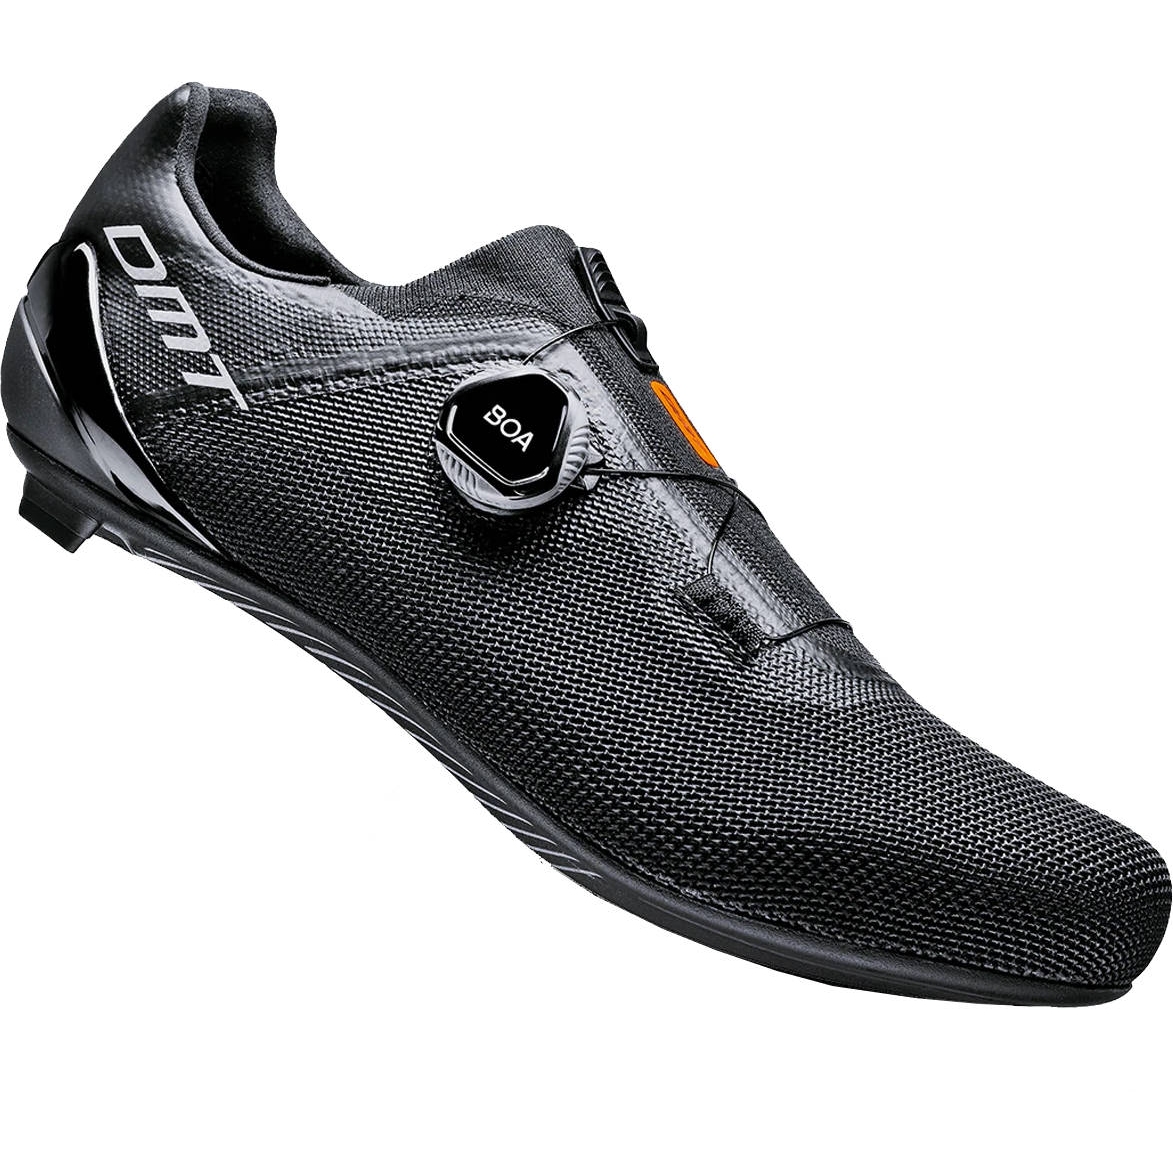 Produktbild von DMT KR4 Rennrad Schuhe - schwarz/schwarz